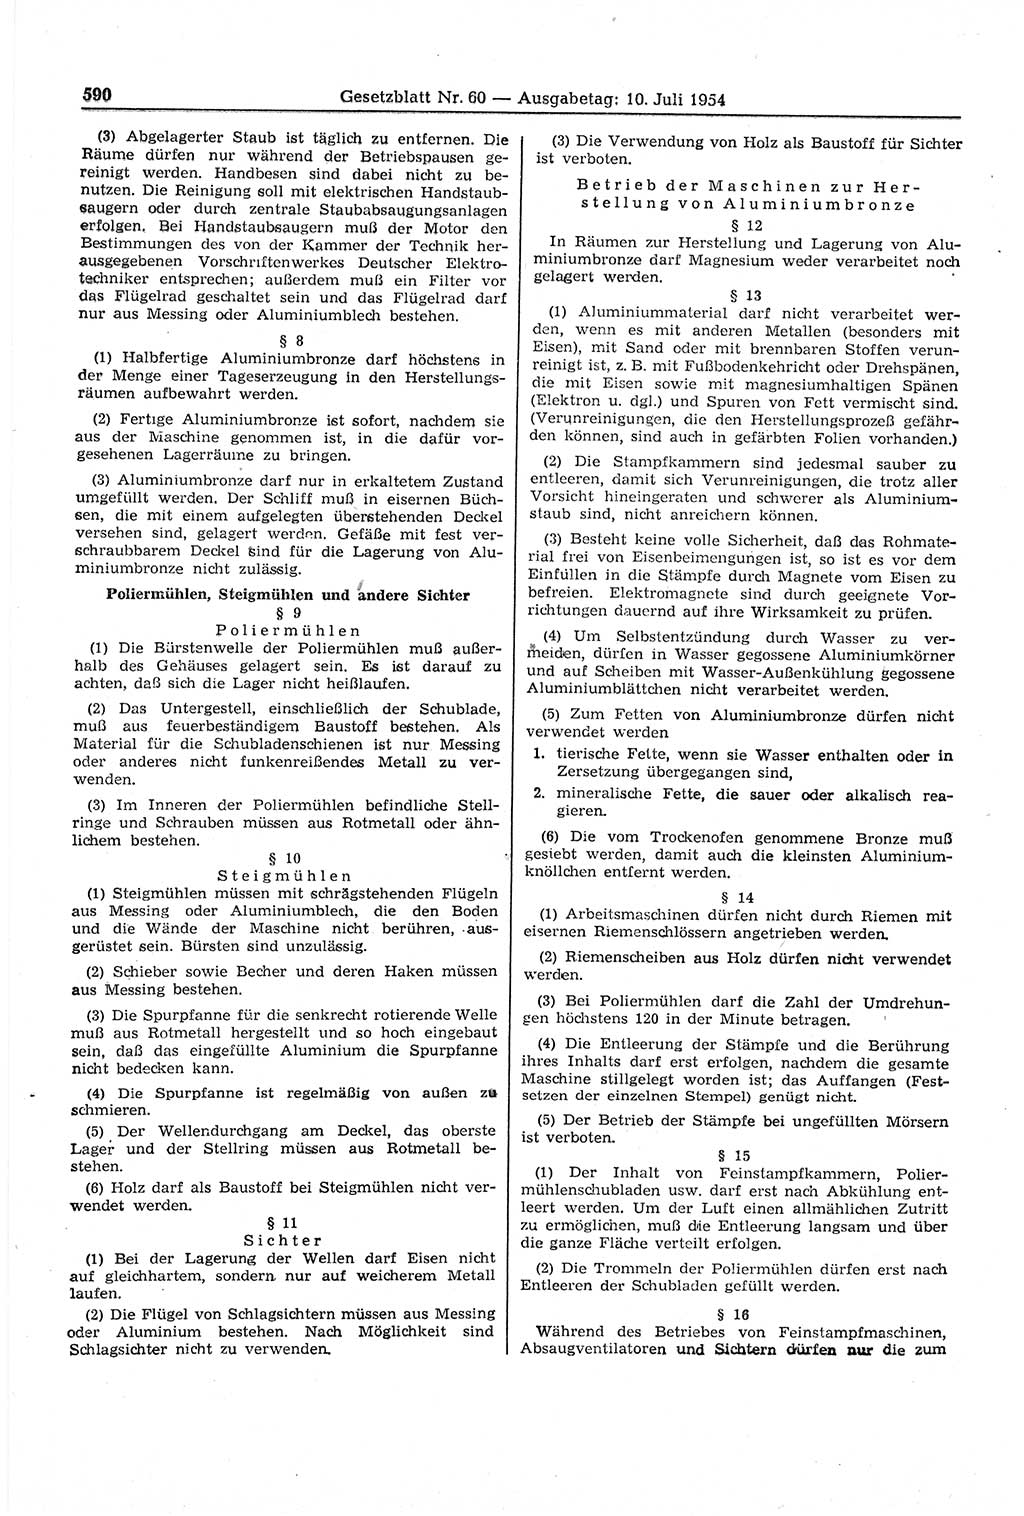 Gesetzblatt (GBl.) der Deutschen Demokratischen Republik (DDR) 1954, Seite 590 (GBl. DDR 1954, S. 590)